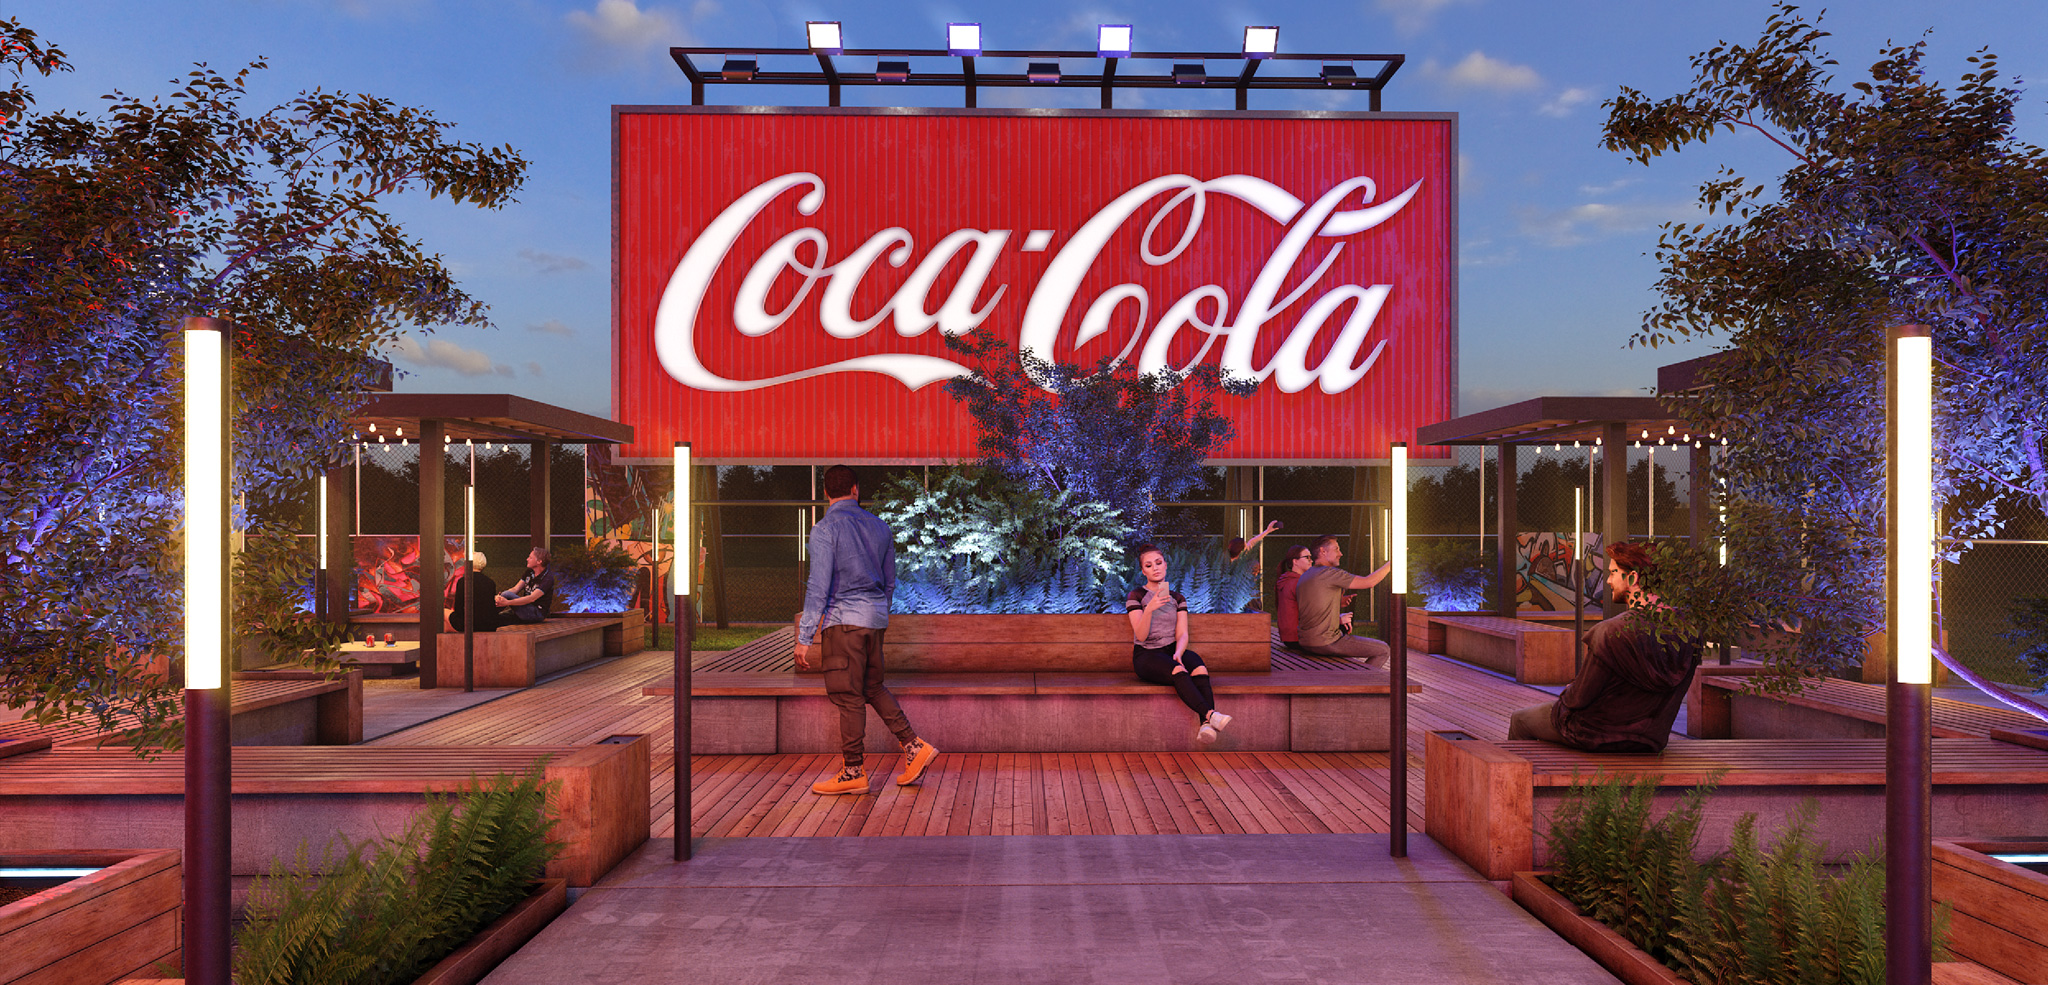 Scenografia Coca Cola - front